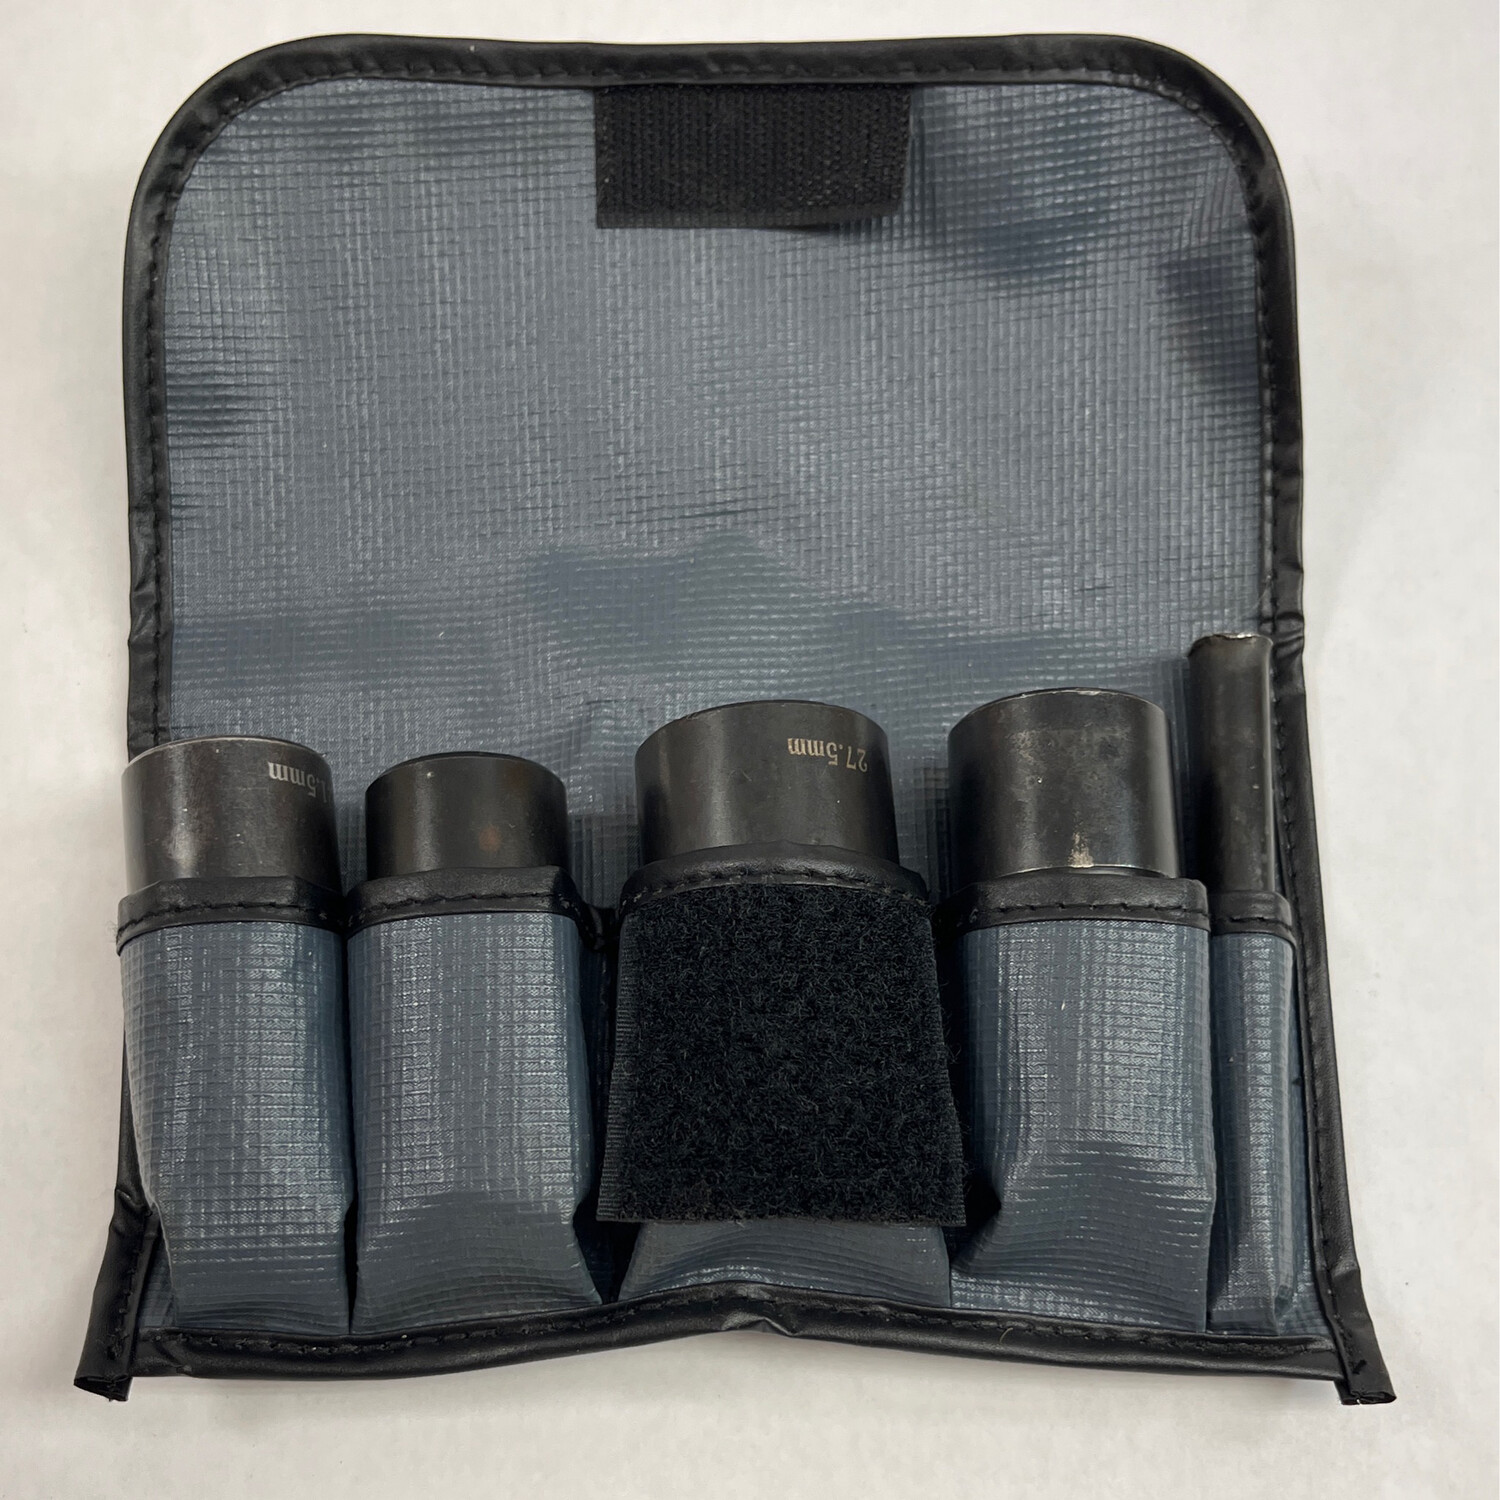 Blue Point Lug Nut Removal Socket Set, TSR1230 - Shop - Tool Swapper